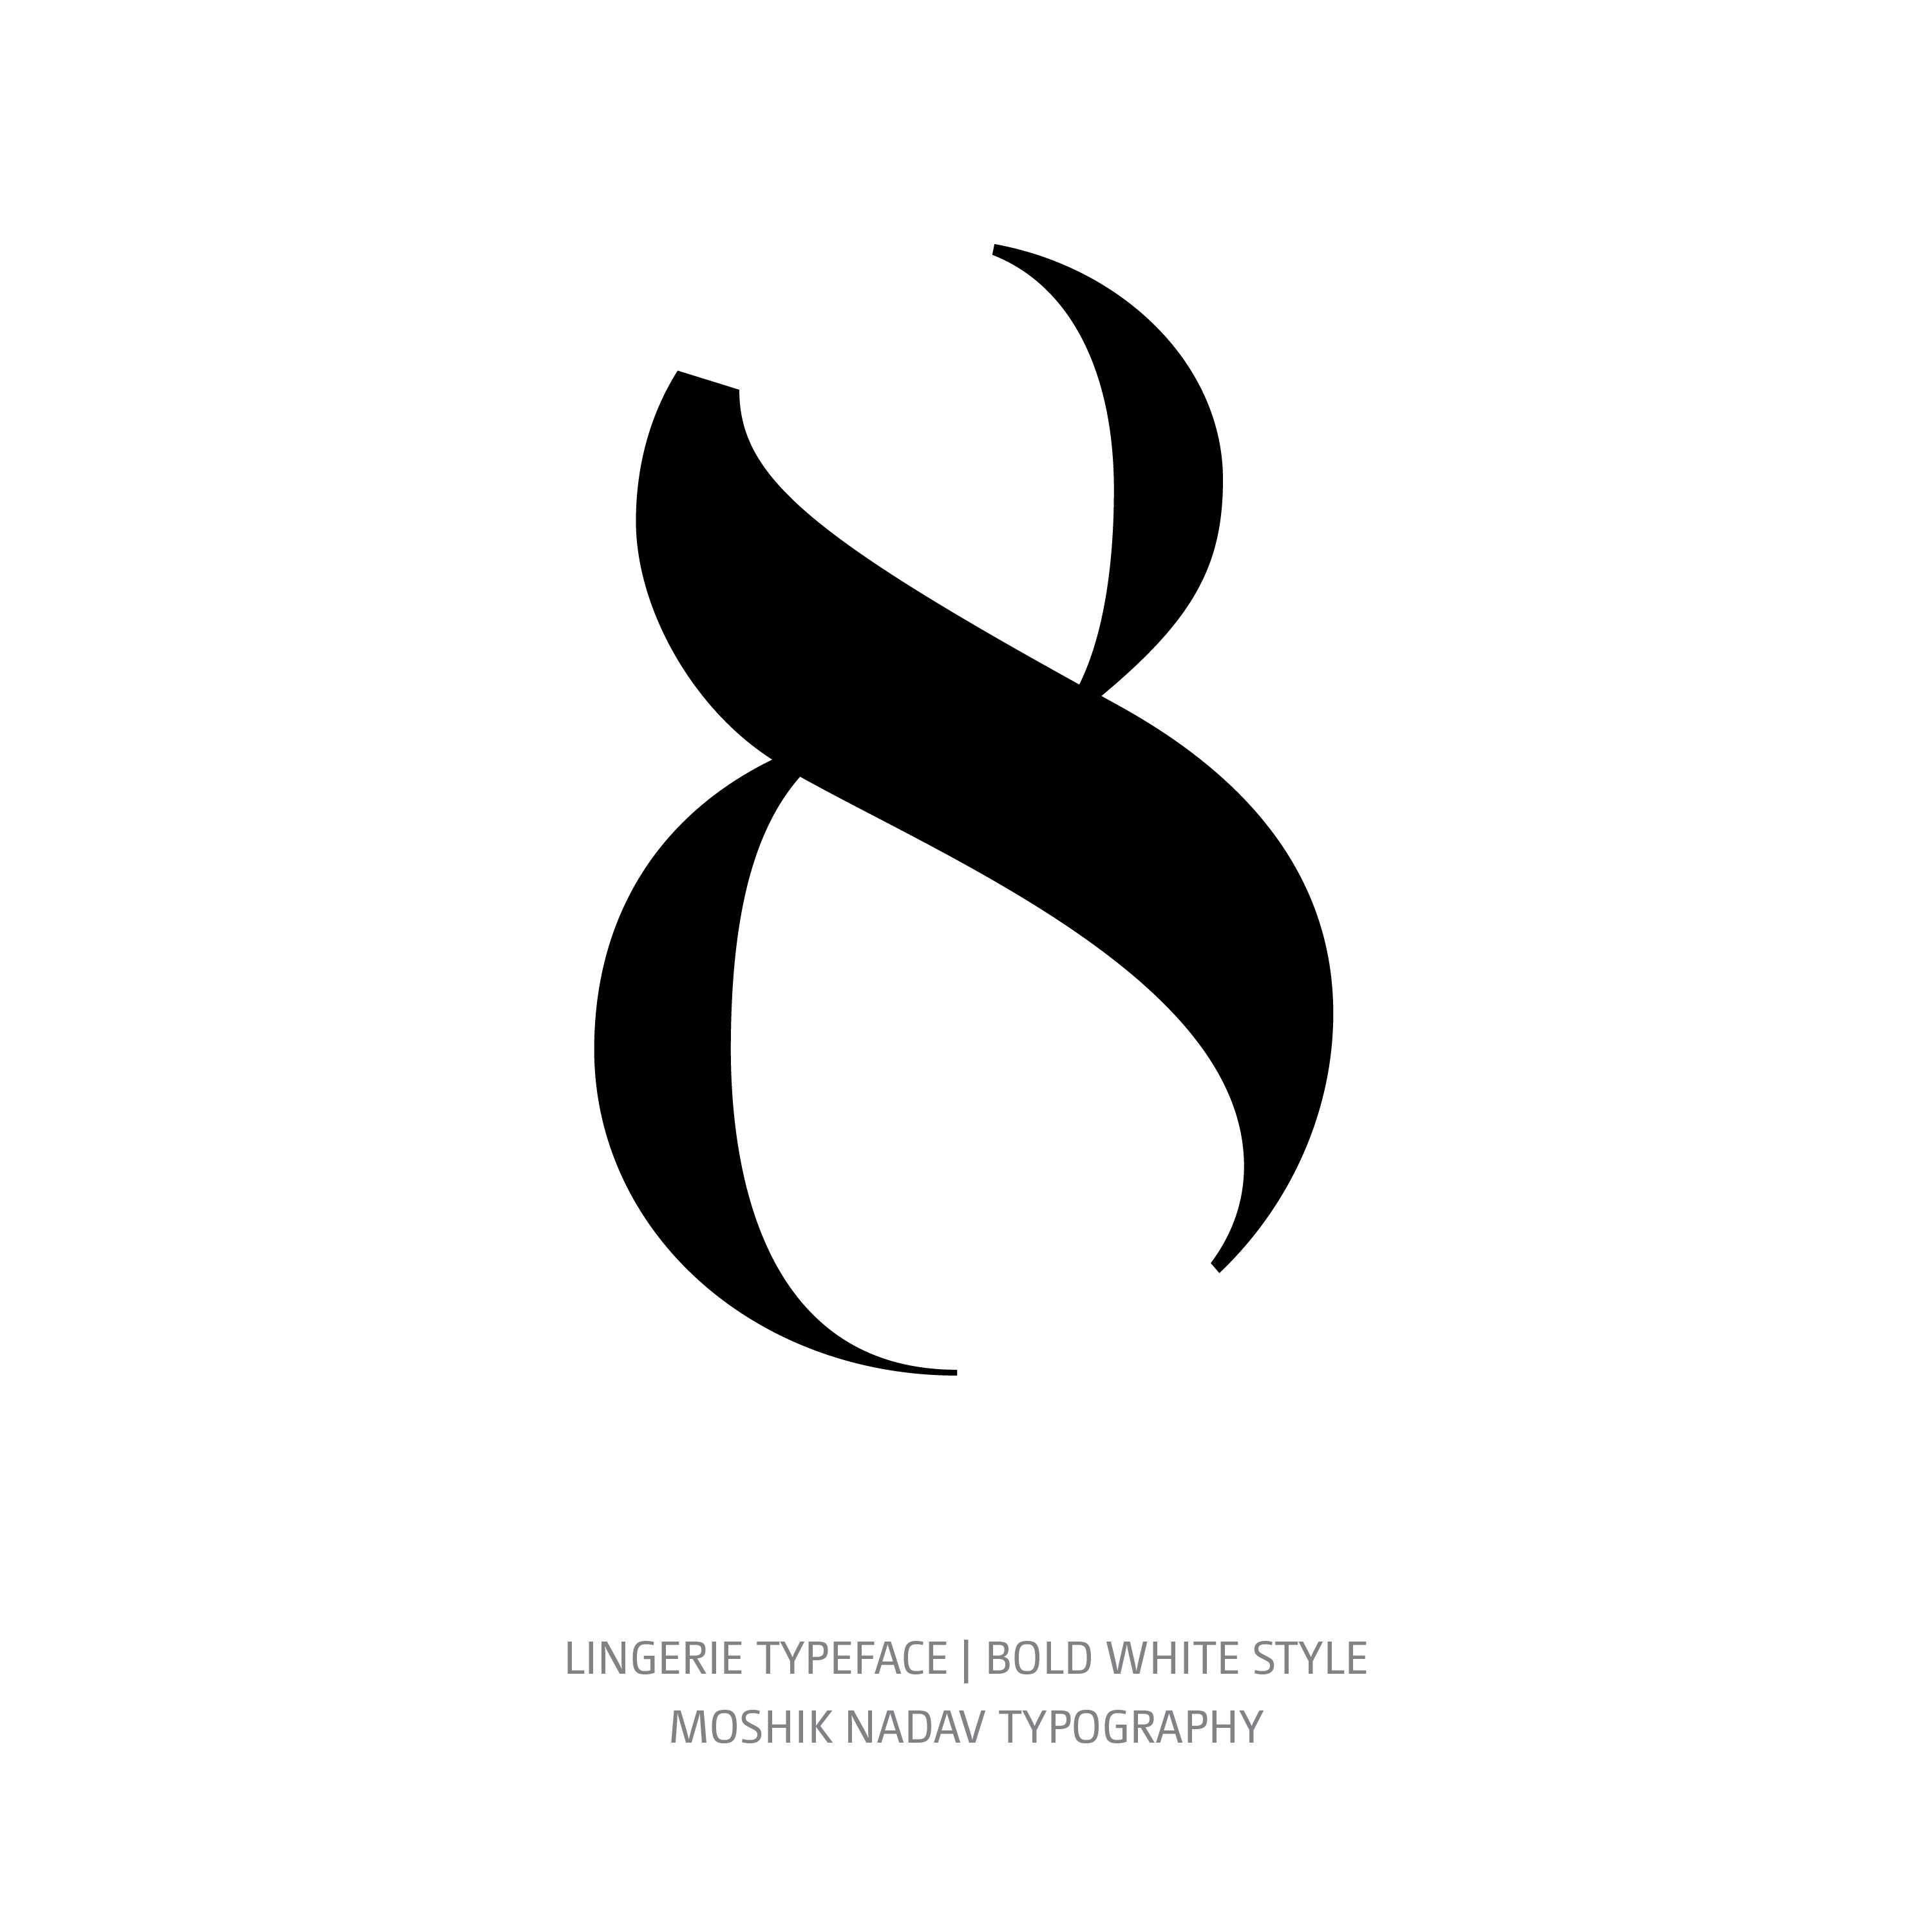 Lingerie Typeface Bold White 8